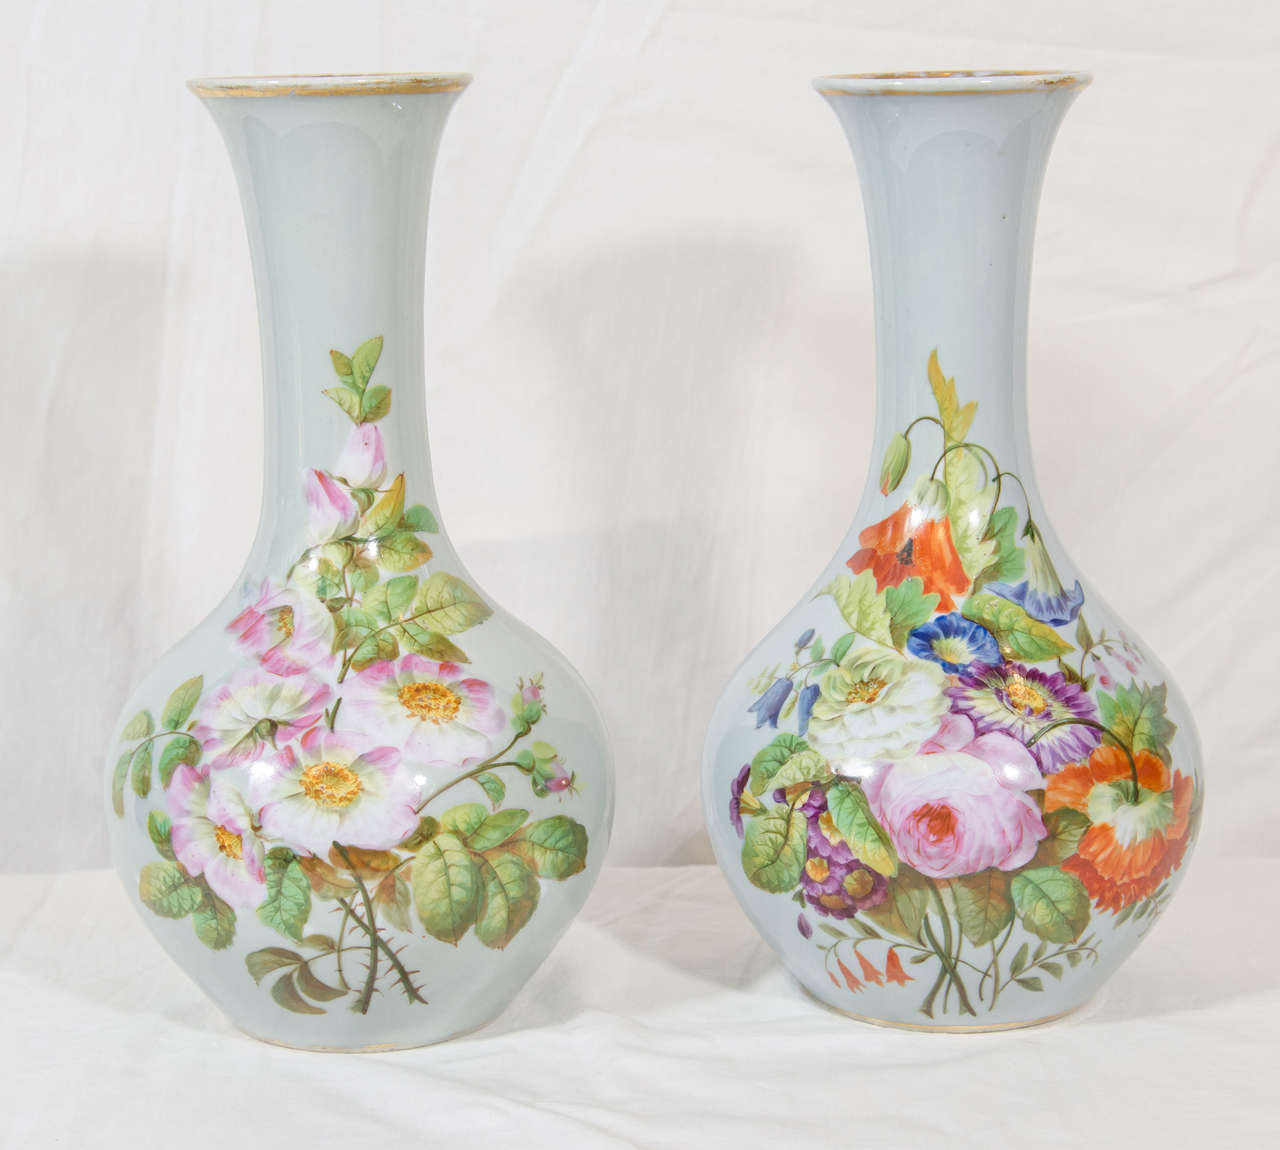 Dieses schöne Paar Opalvasen aus dem 19. Jahrhundert hat gut gemalte Blumen. Einzeln handbemalt, jeweils mit einem Strauß aus Pfingstrosen, Tulpen und anderen Blumen auf hellblauem Grund. 
Das Glas ist leicht lichtdurchlässig, wie es sich für